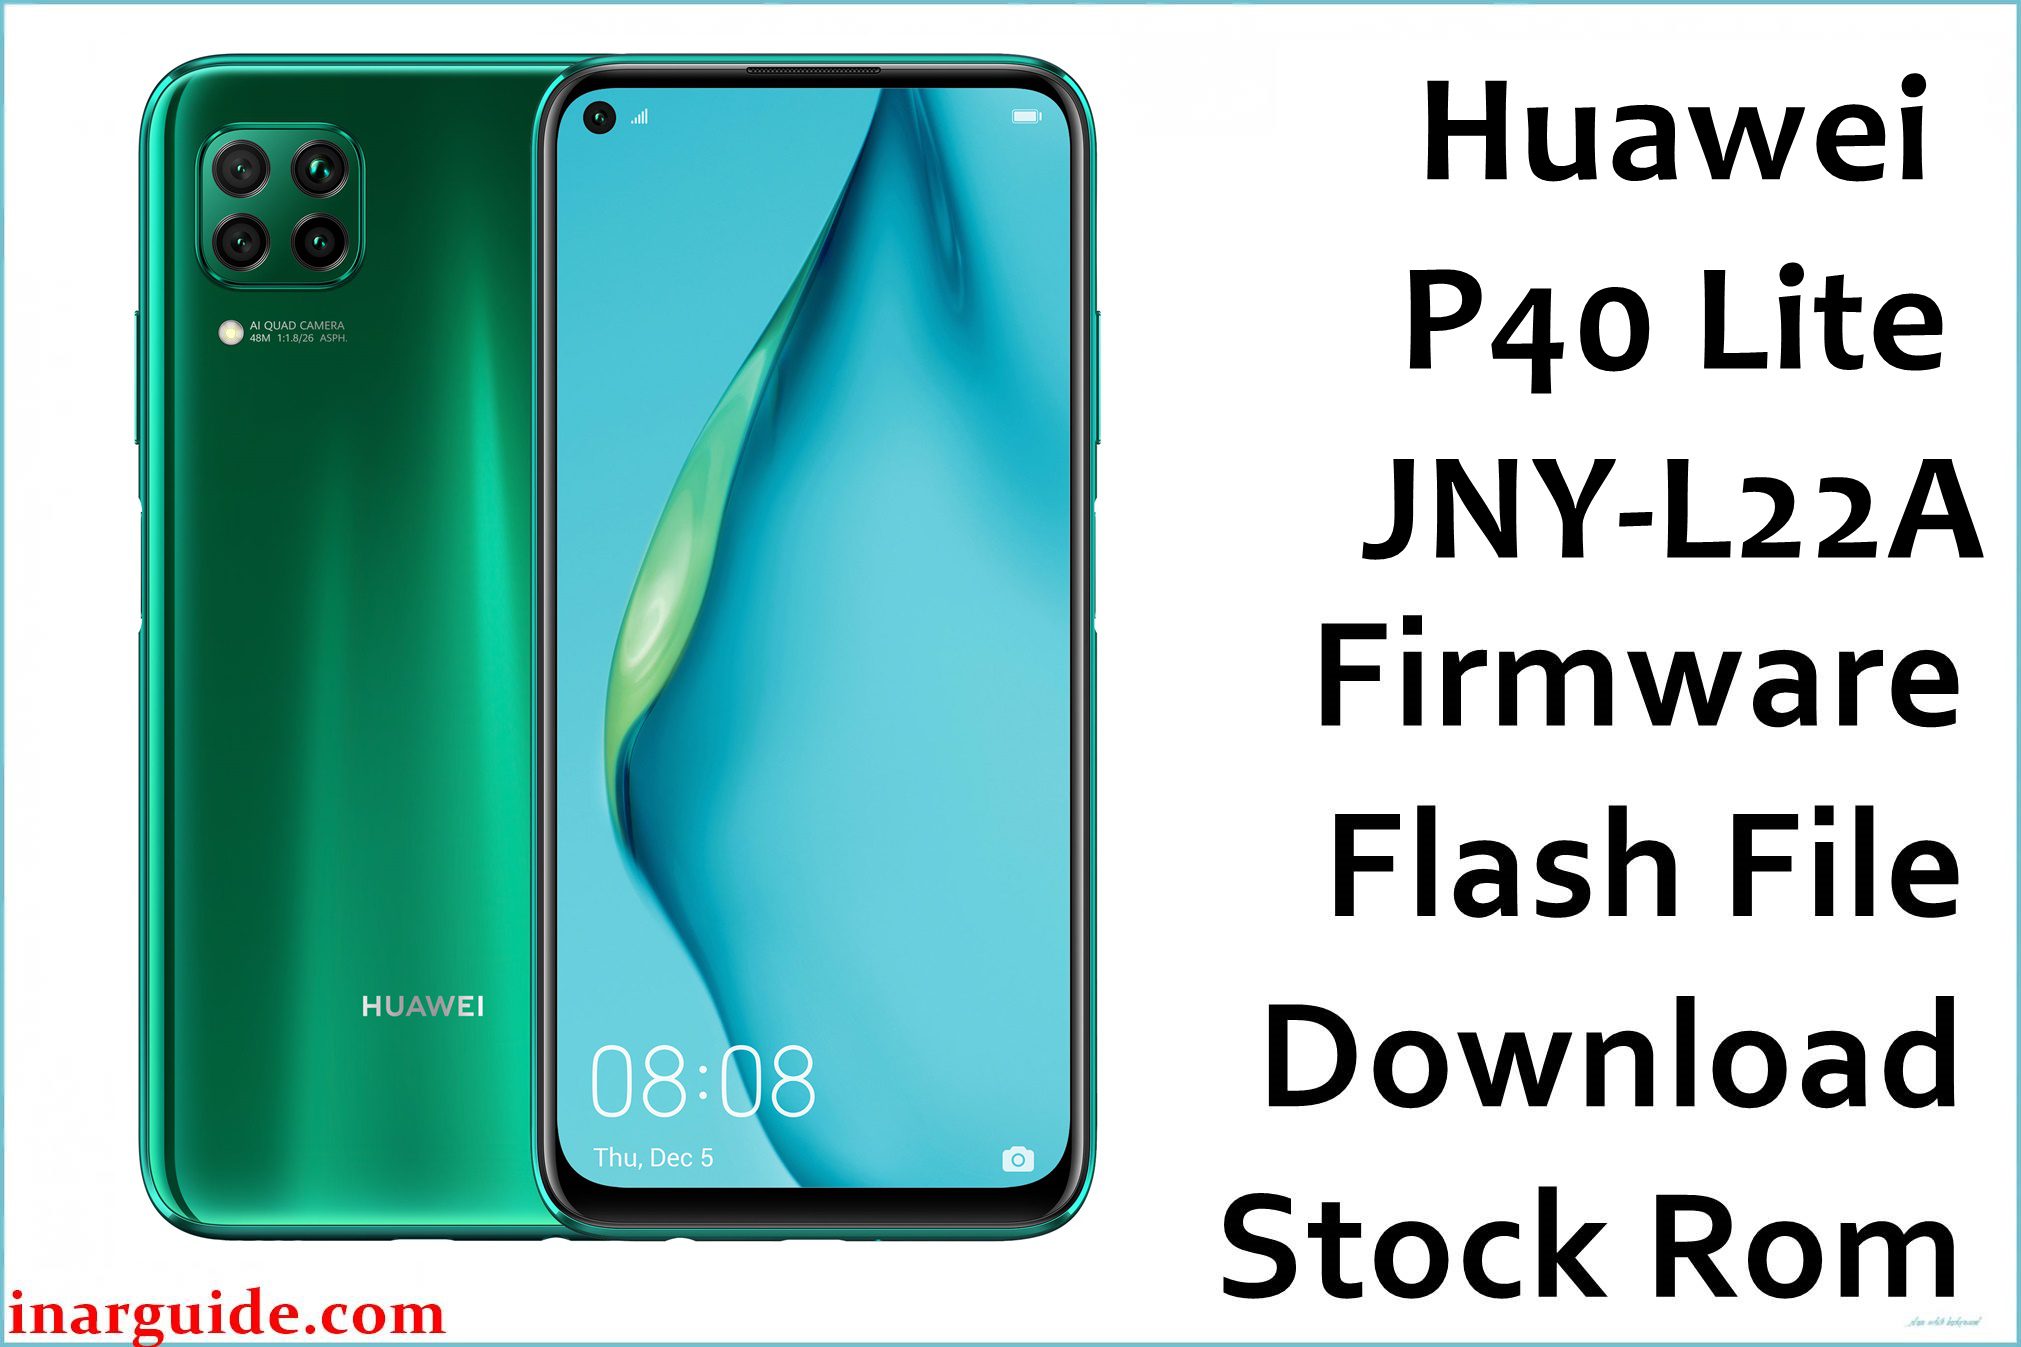 Huawei P40 Lite JNY L22A